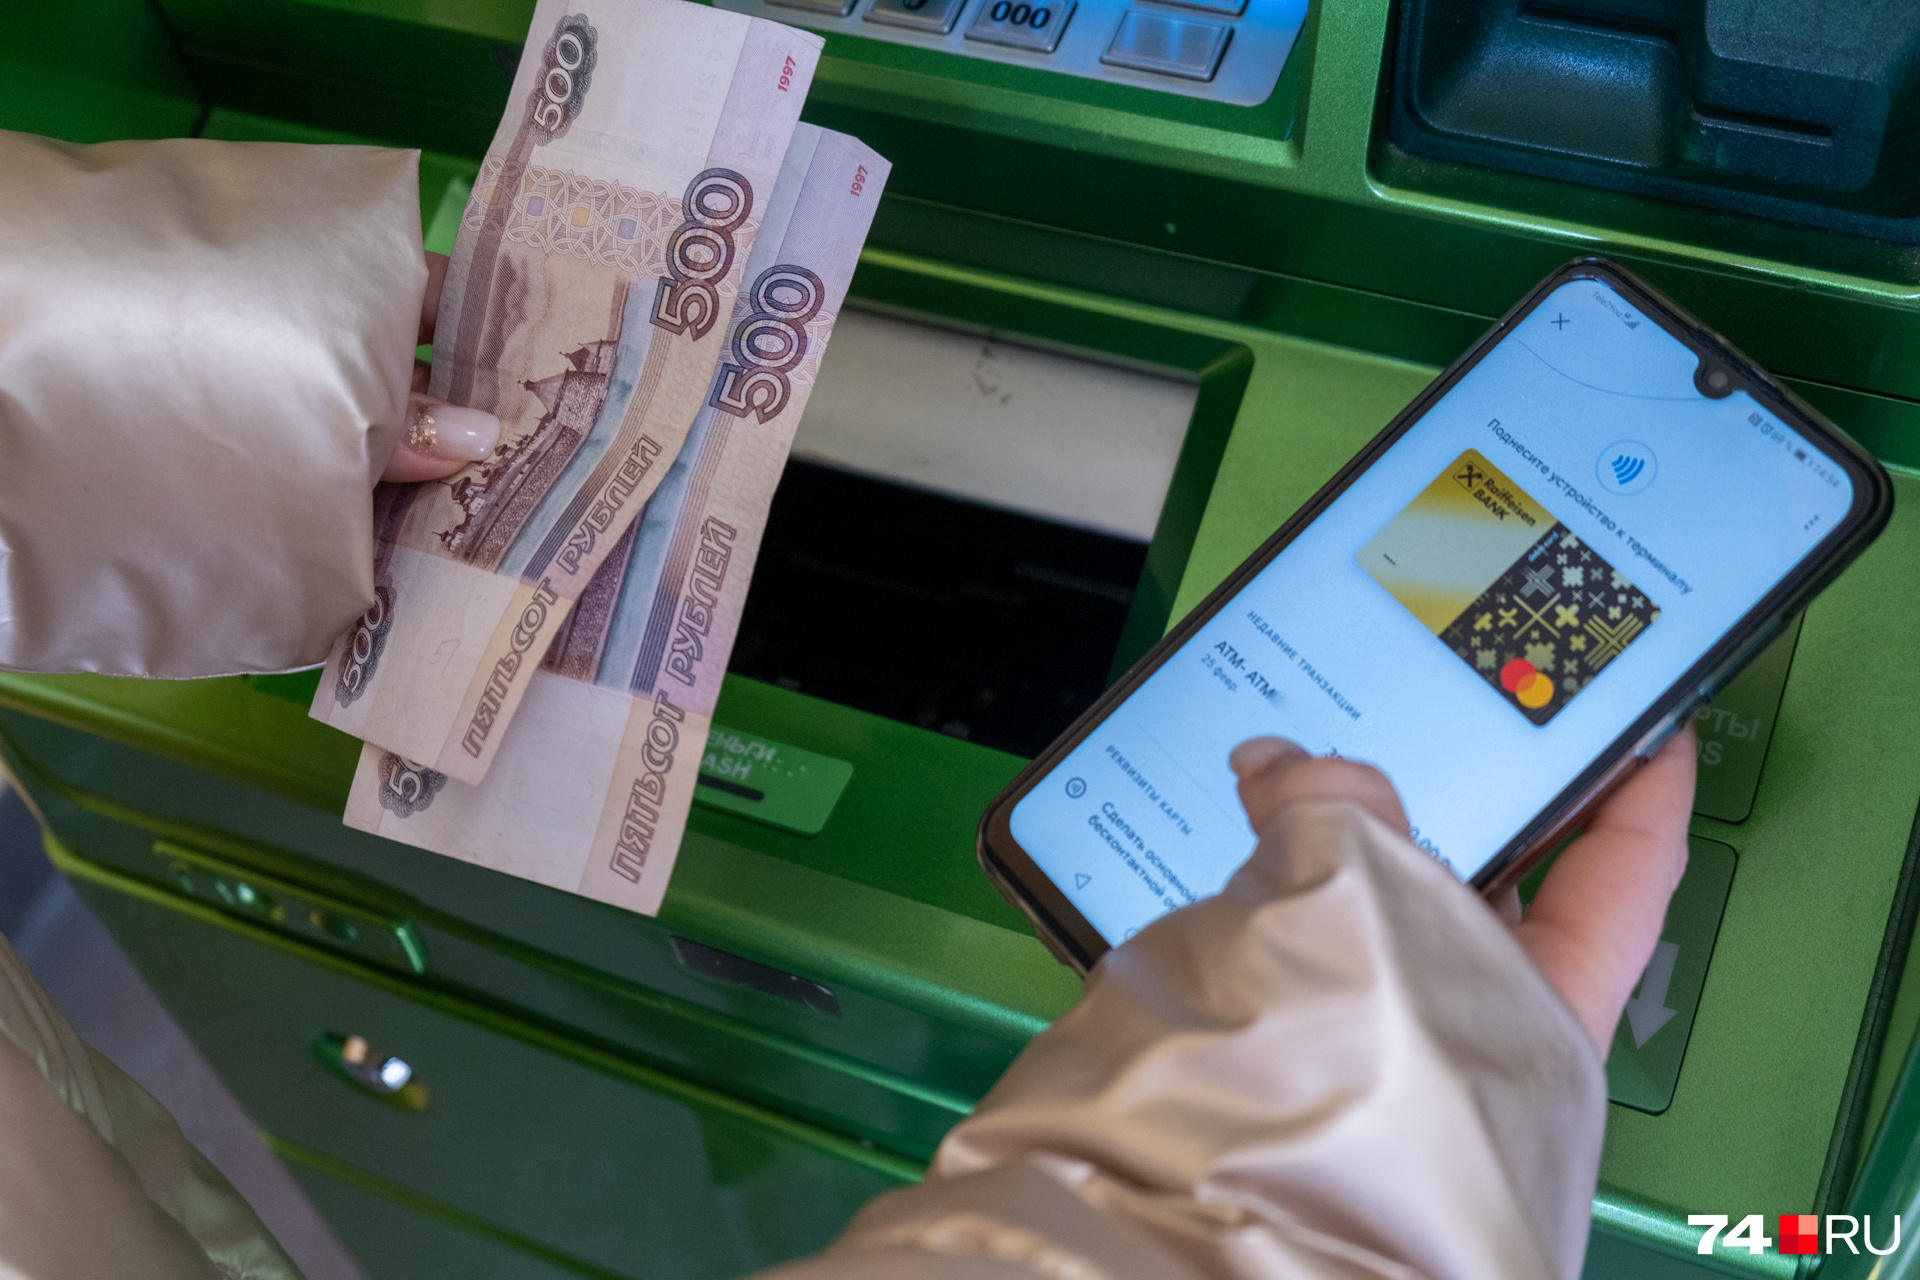 В этом банкомате имеются только <nobr class="_">500-рублевые</nobr> купюры и в ограниченном количестве